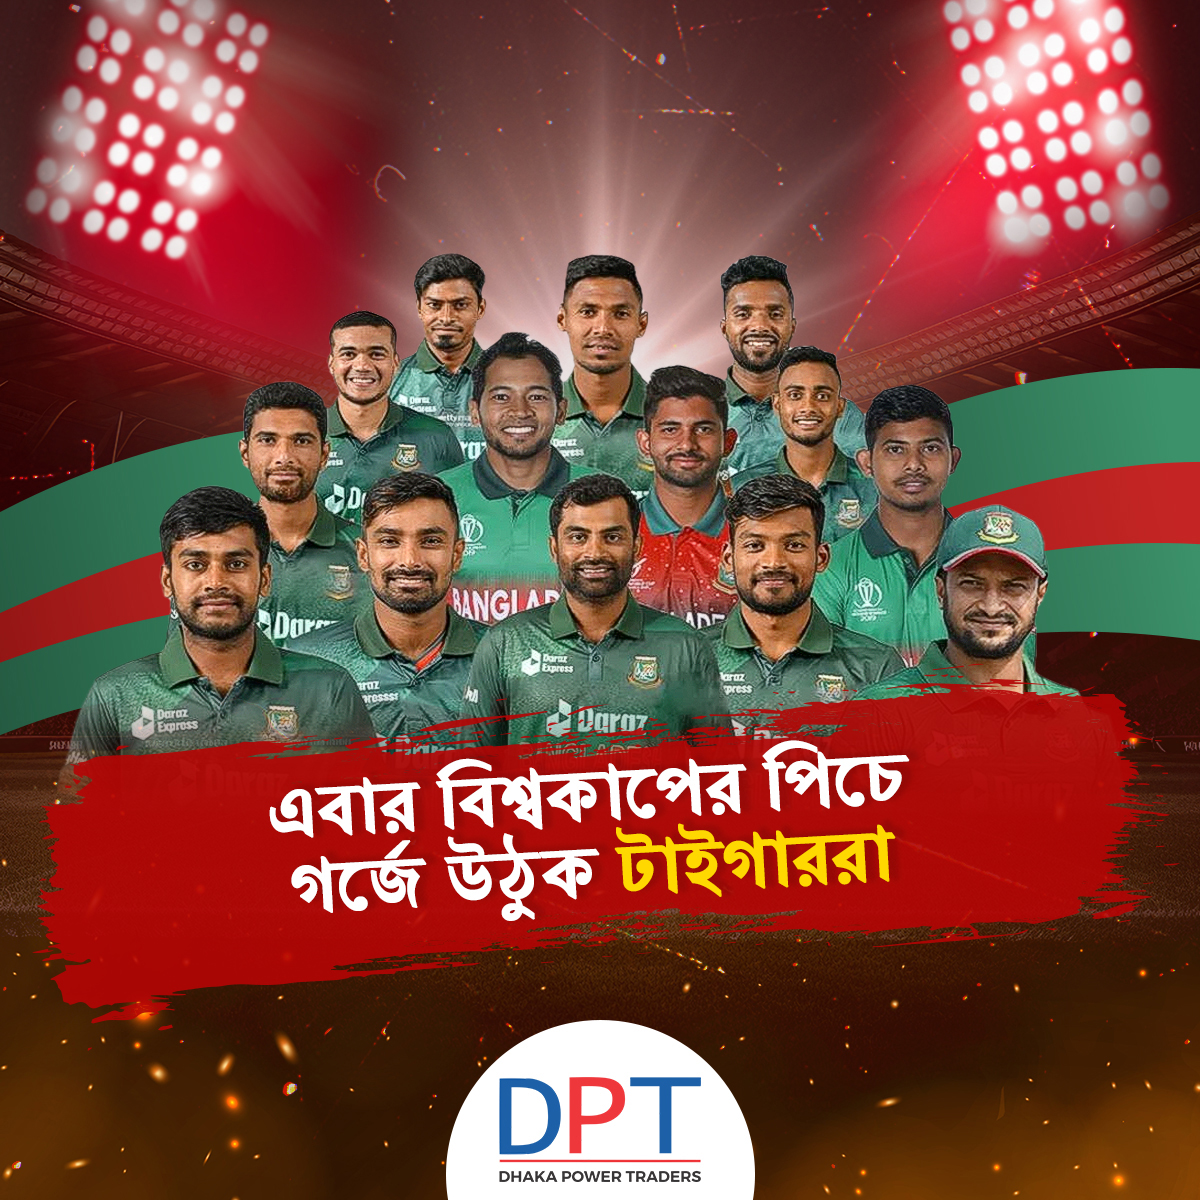 ২০২৩ ক্রিকেট বিশ্বকাপের সম্মুখে বাংলাদেশ ক্রিকেট টিমকে অনেক শুভেচ্ছা ও শুভকামনা জানাচ্ছে DPT। 2023 ICC Men's Cricket World Cup.

#WorldCup #CricketWorldCup2023 #Bangladesh #BangladeshCricketTeam #BangladeshTigers #DPT #DhakaPowerTraders